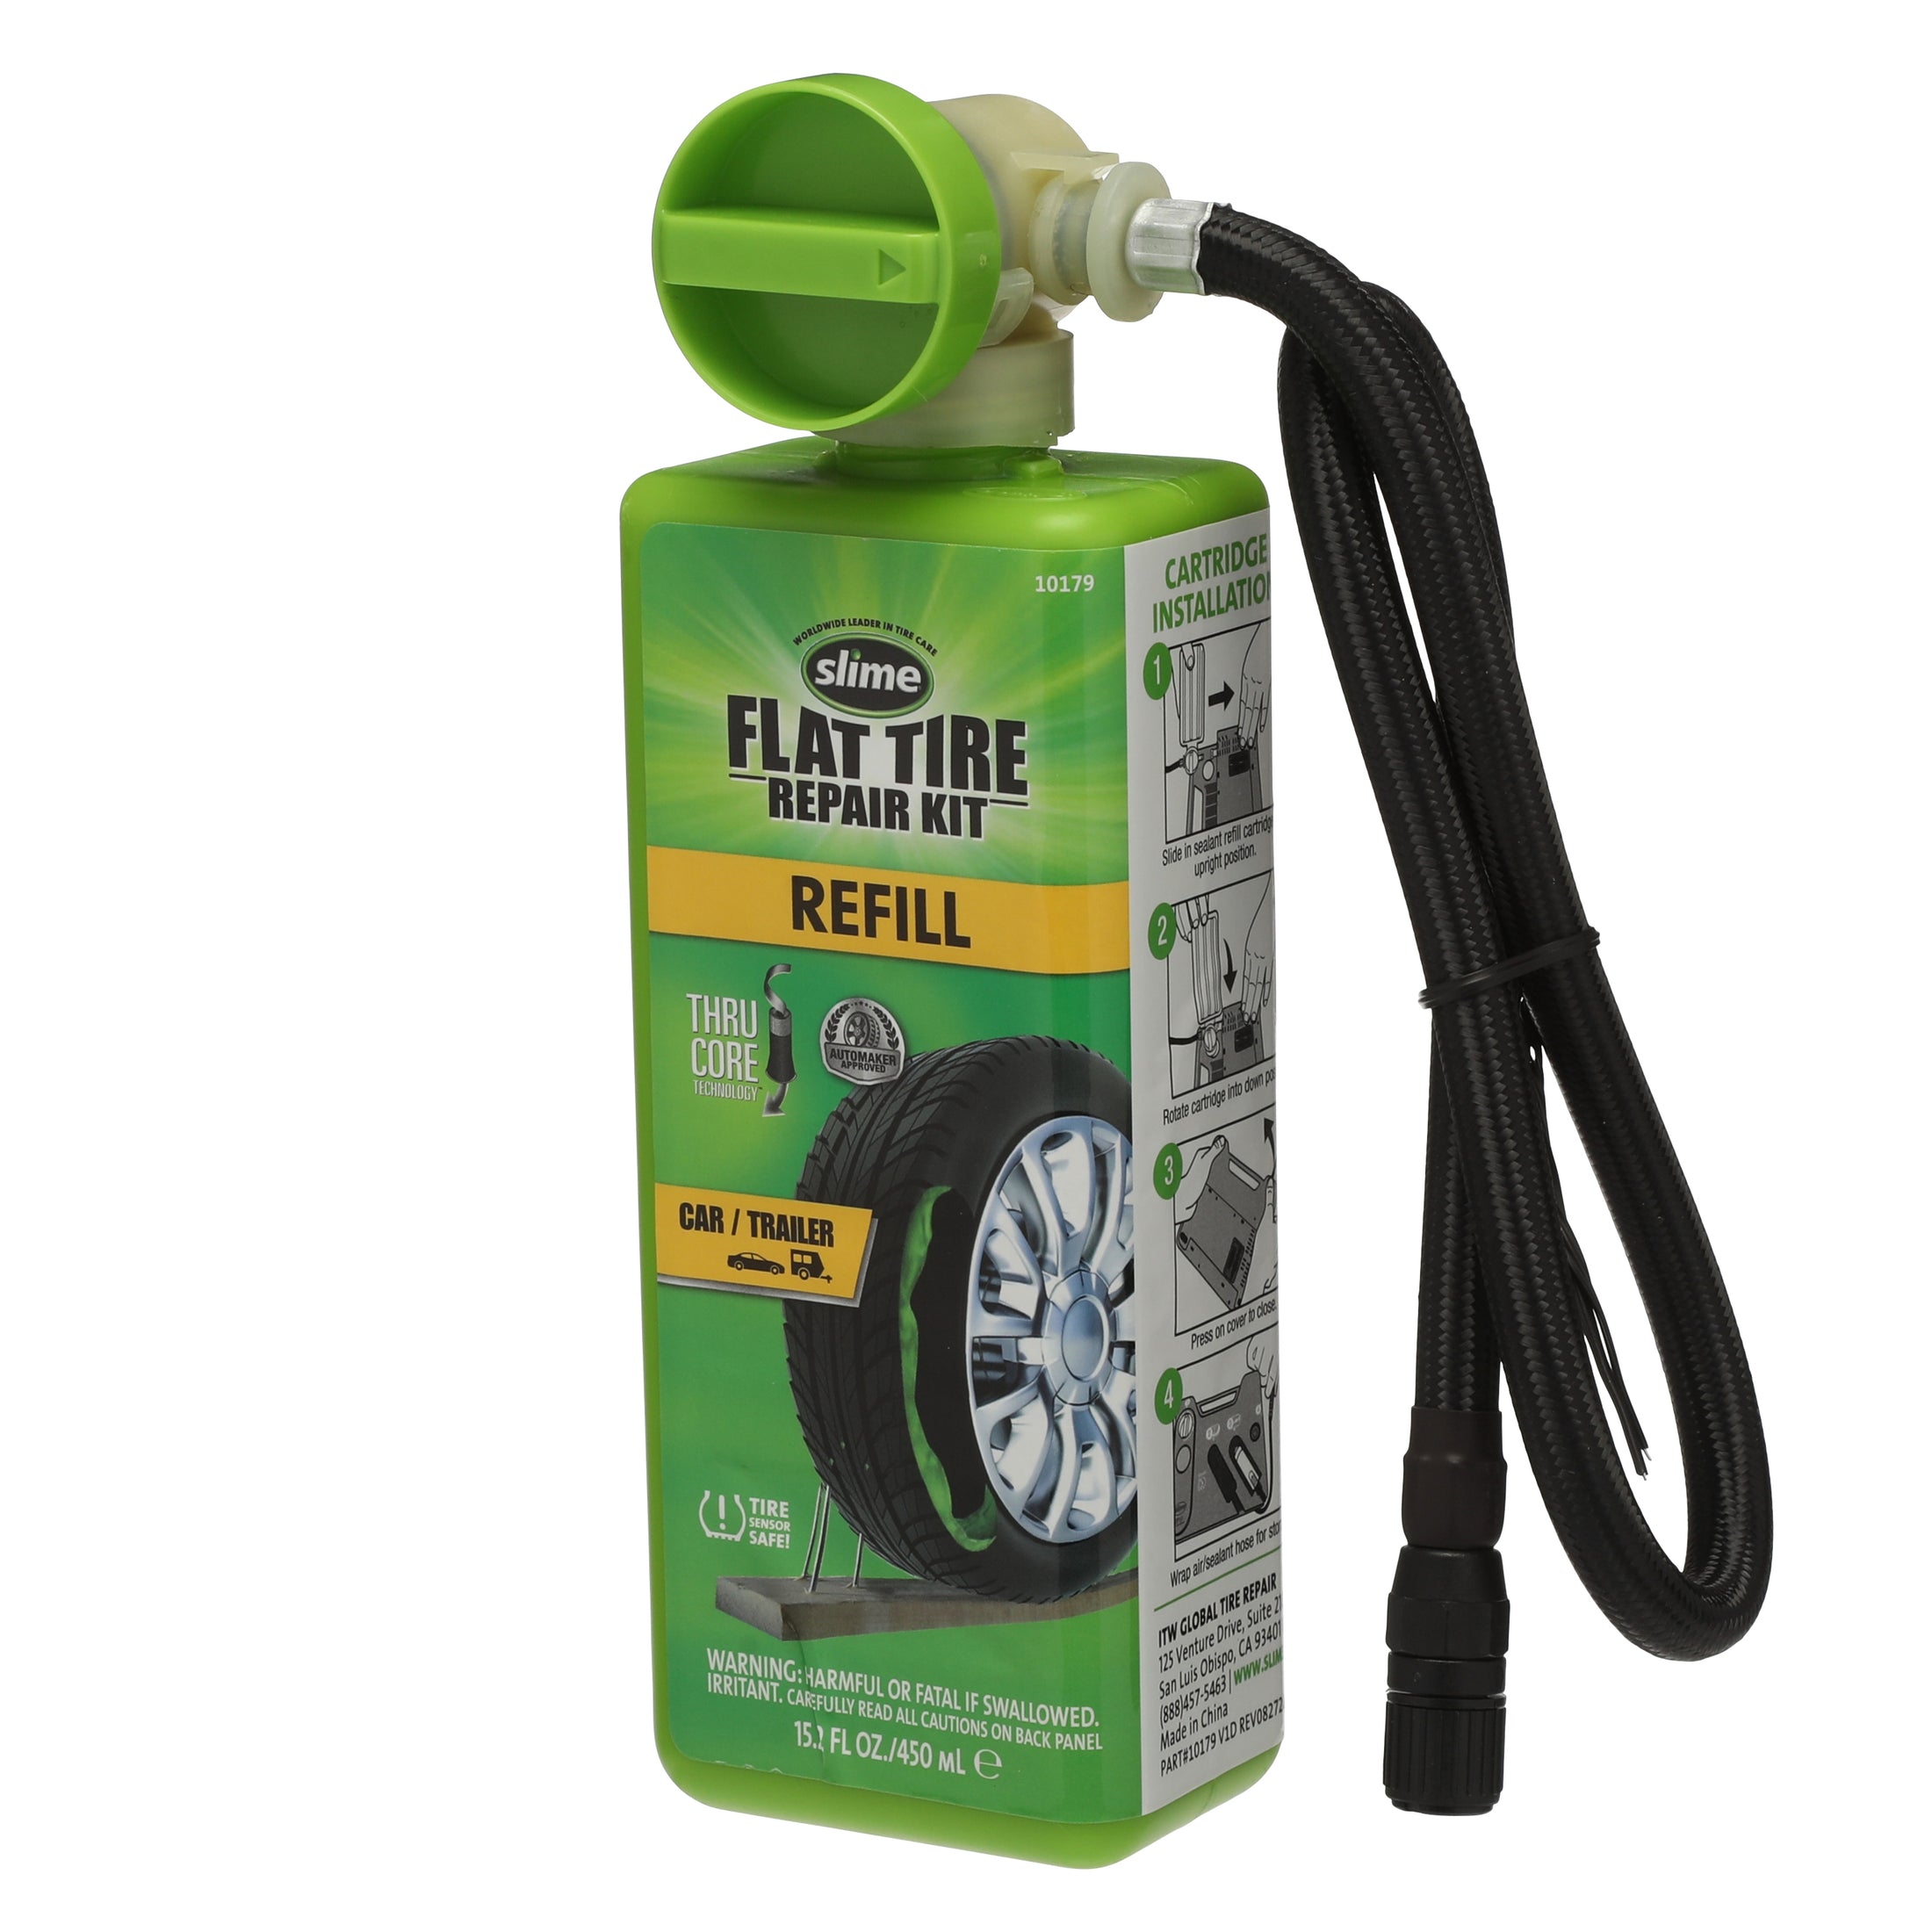 Sealant Refill Cartridge for the Flat Tire Repair Kits - Car